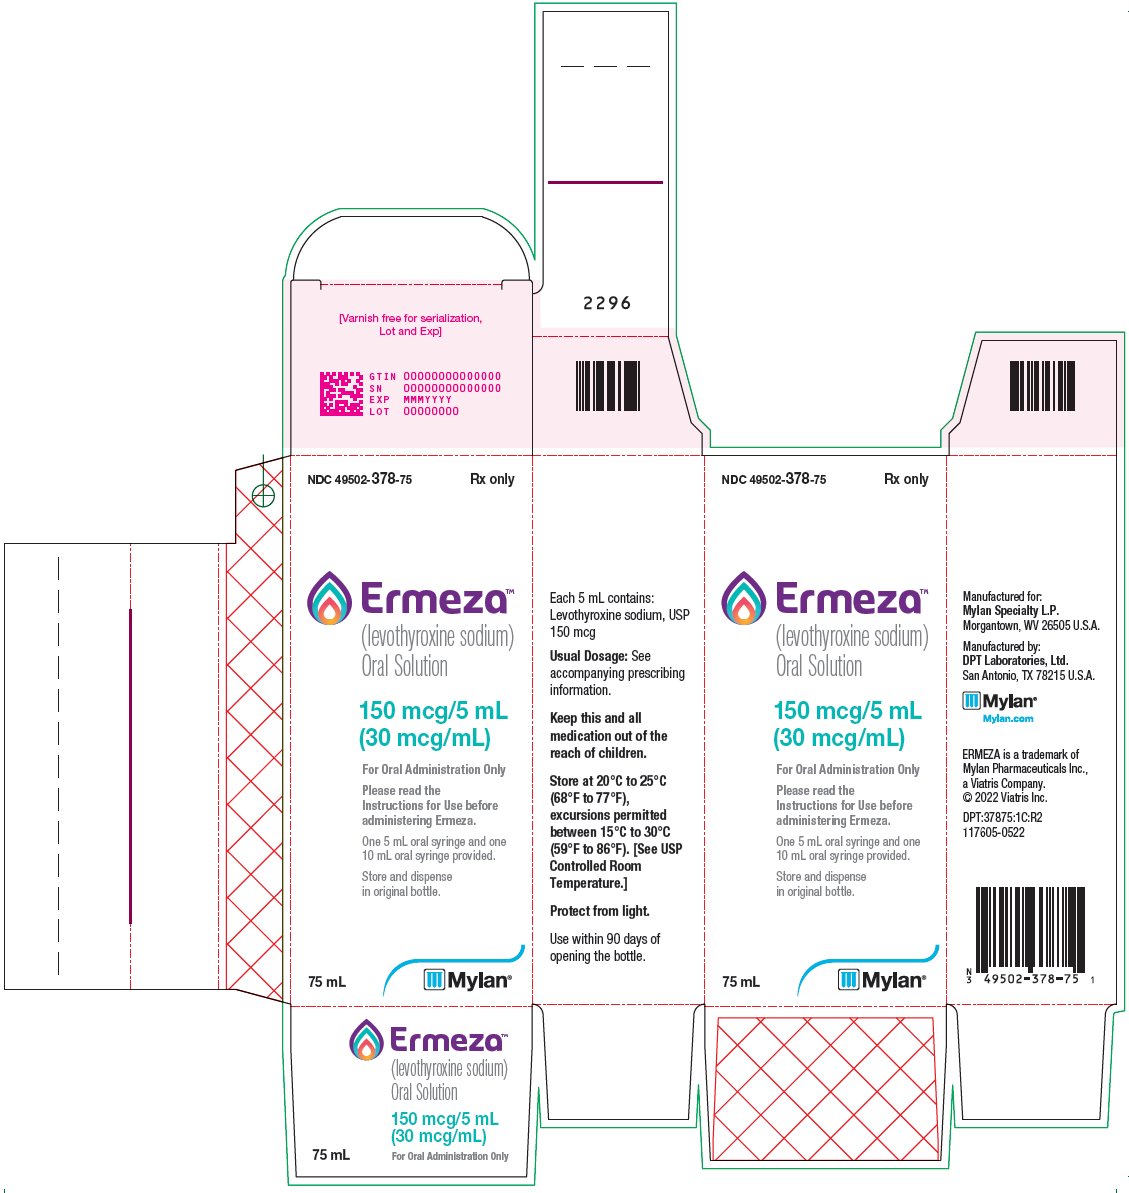 Ermeza Oral Solution 150 mcg/5 mL Carton Label